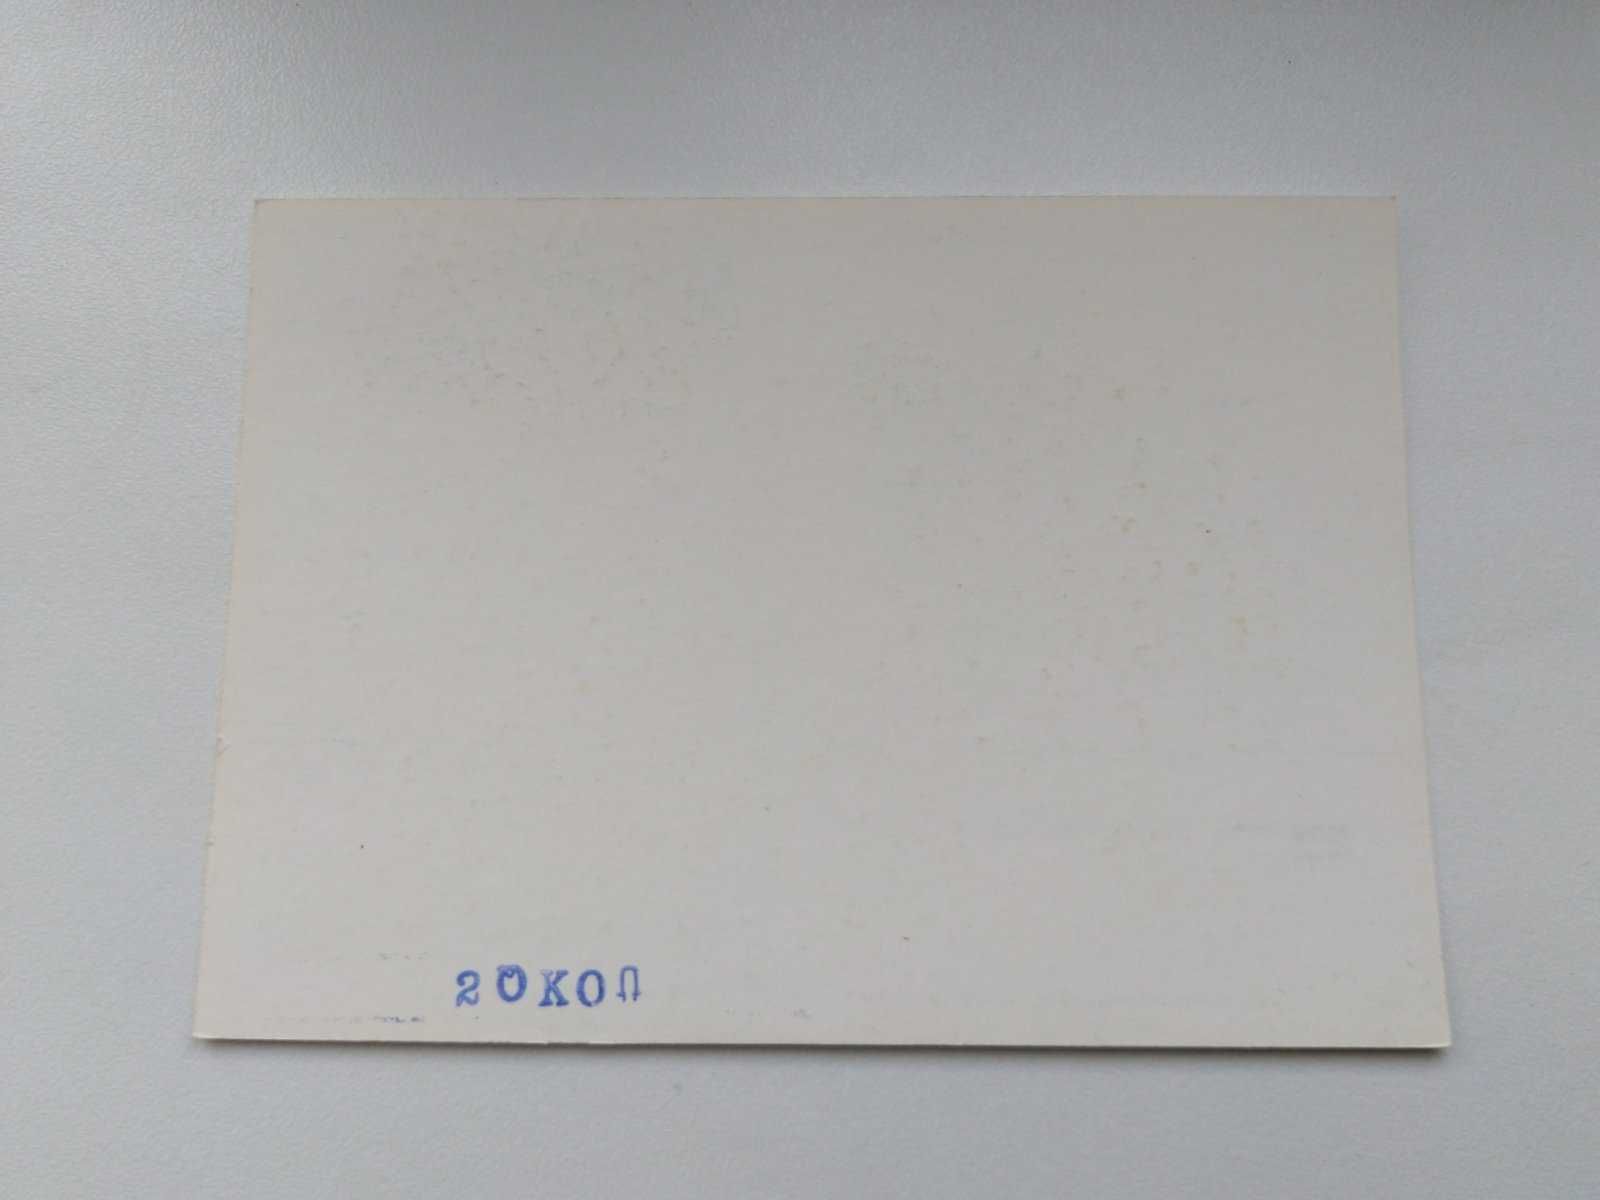 Почтовая карточка 9-я межд конфер по физике облаков Почта СССР 1984